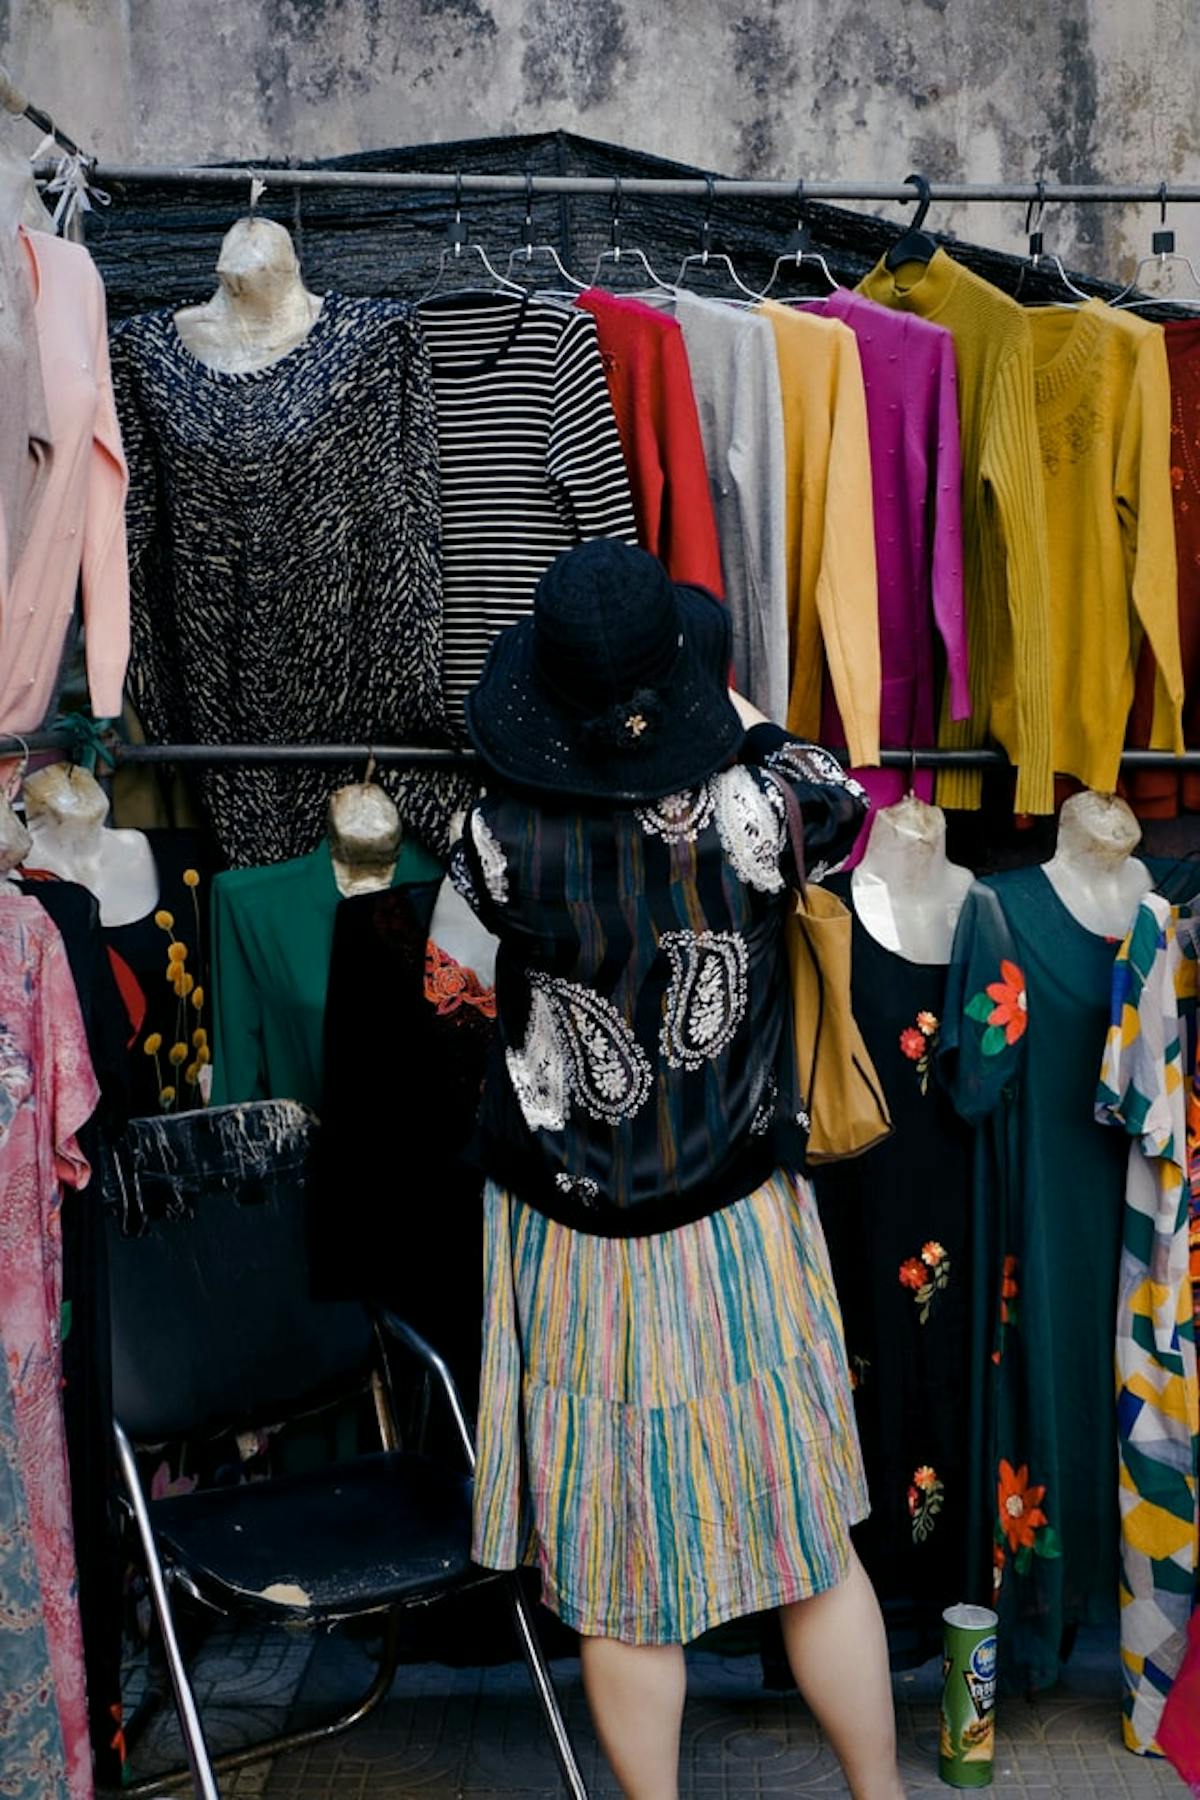  meerkleurige kleding in een tweedehandswinkel